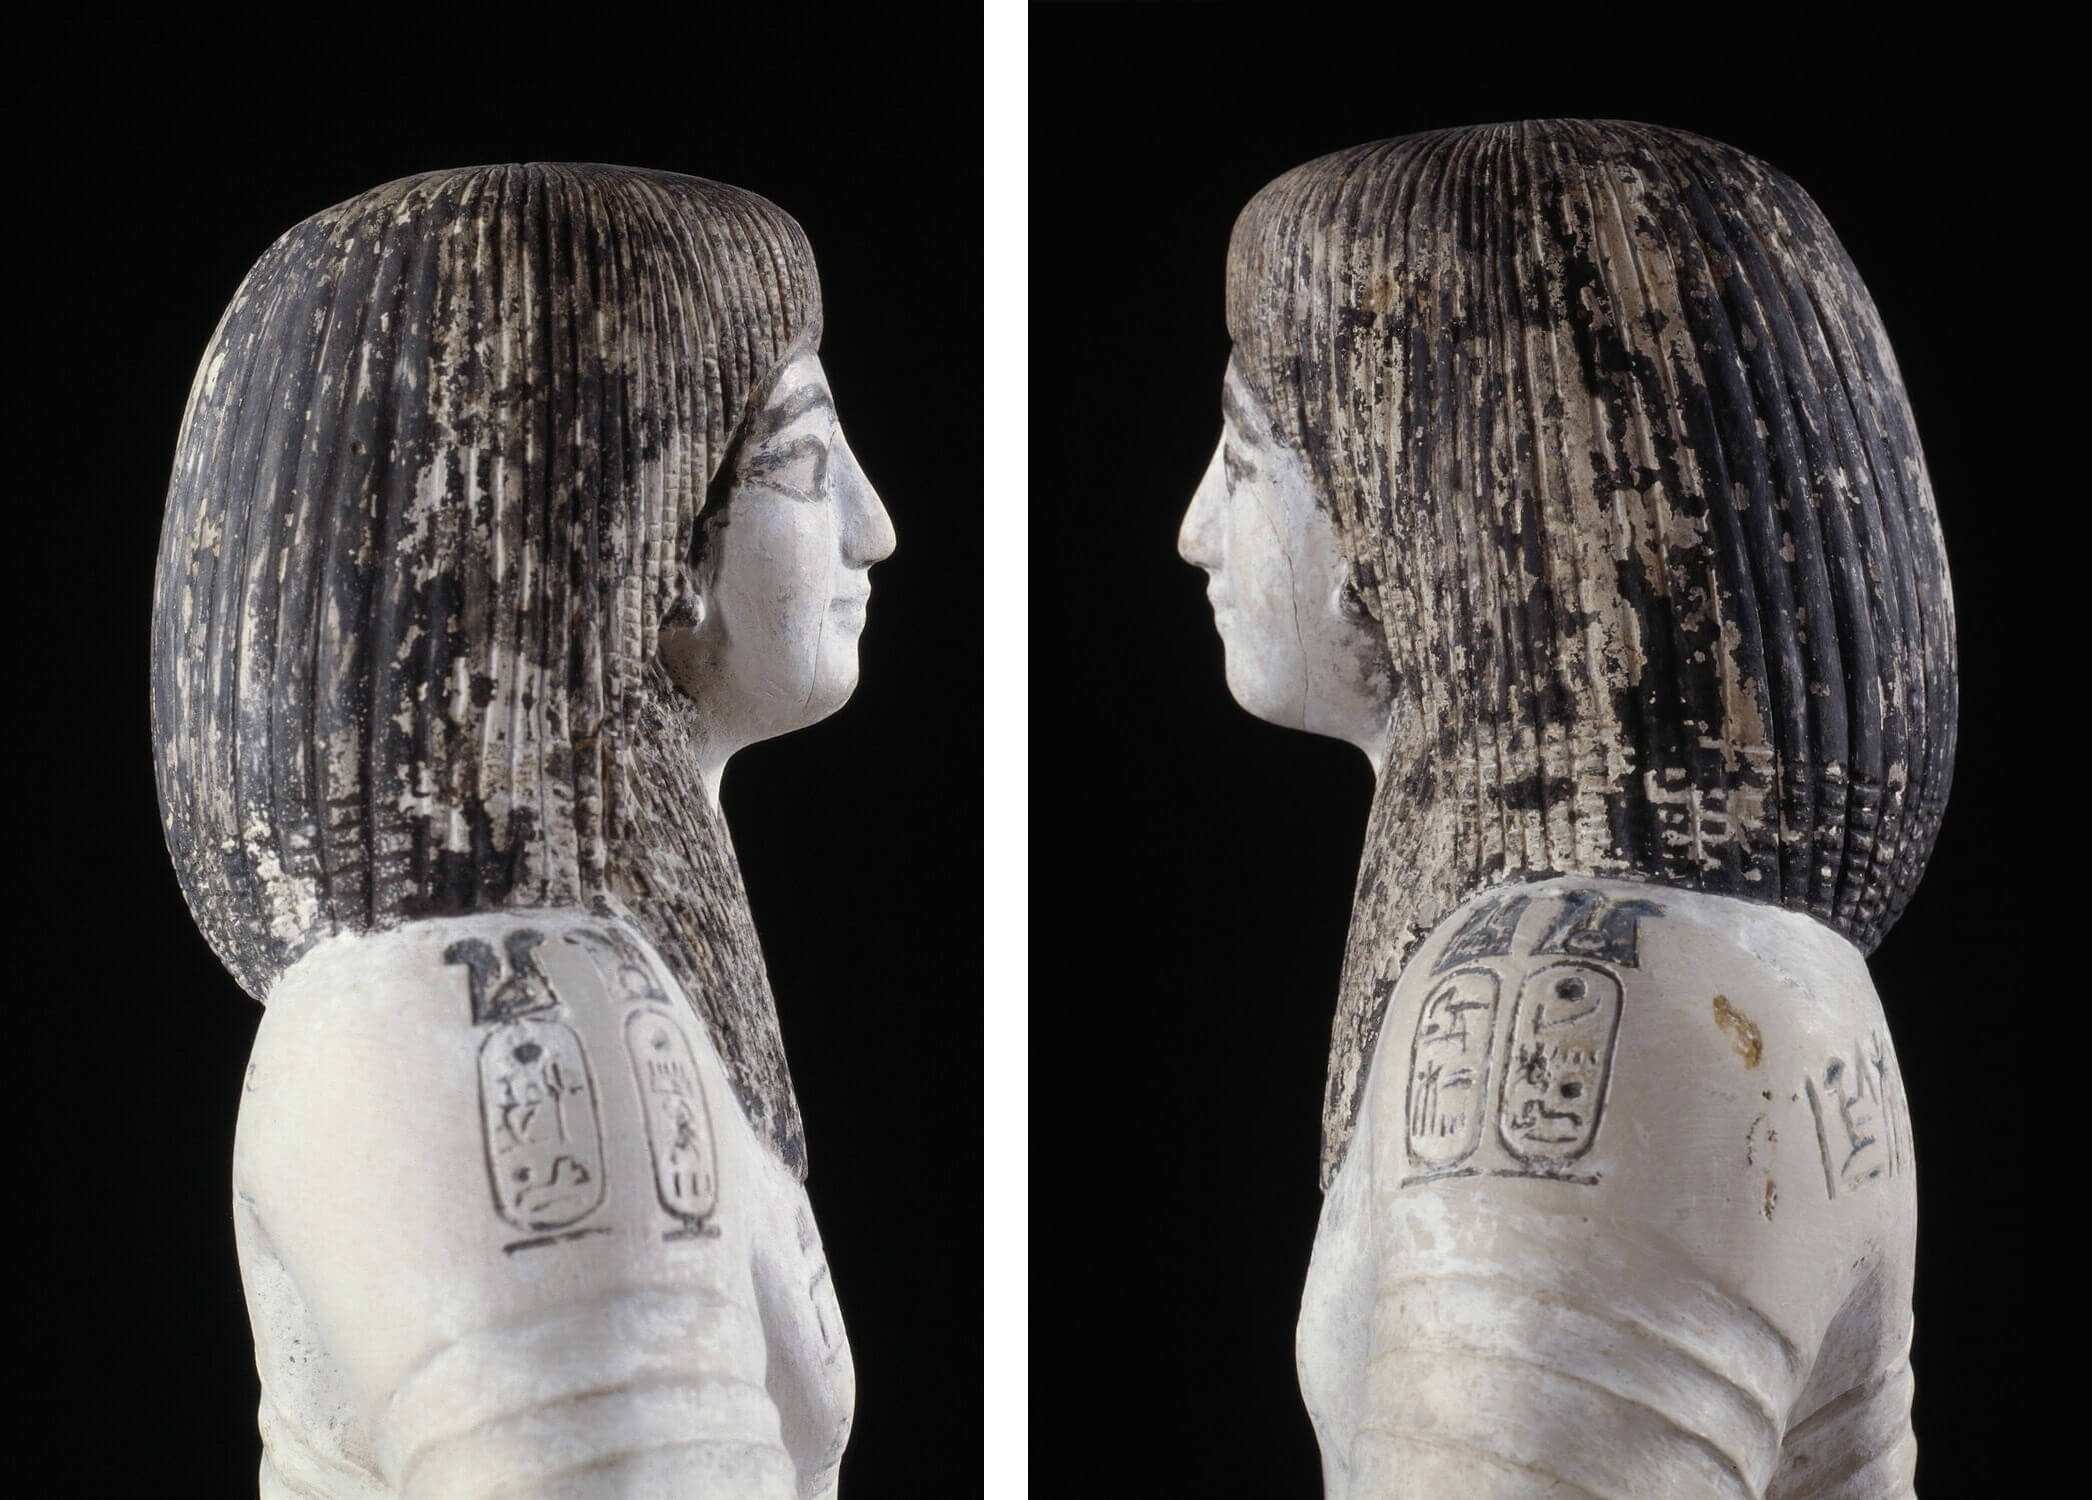 Scribe Ramose from Deir el-Medina - Egypt Museum